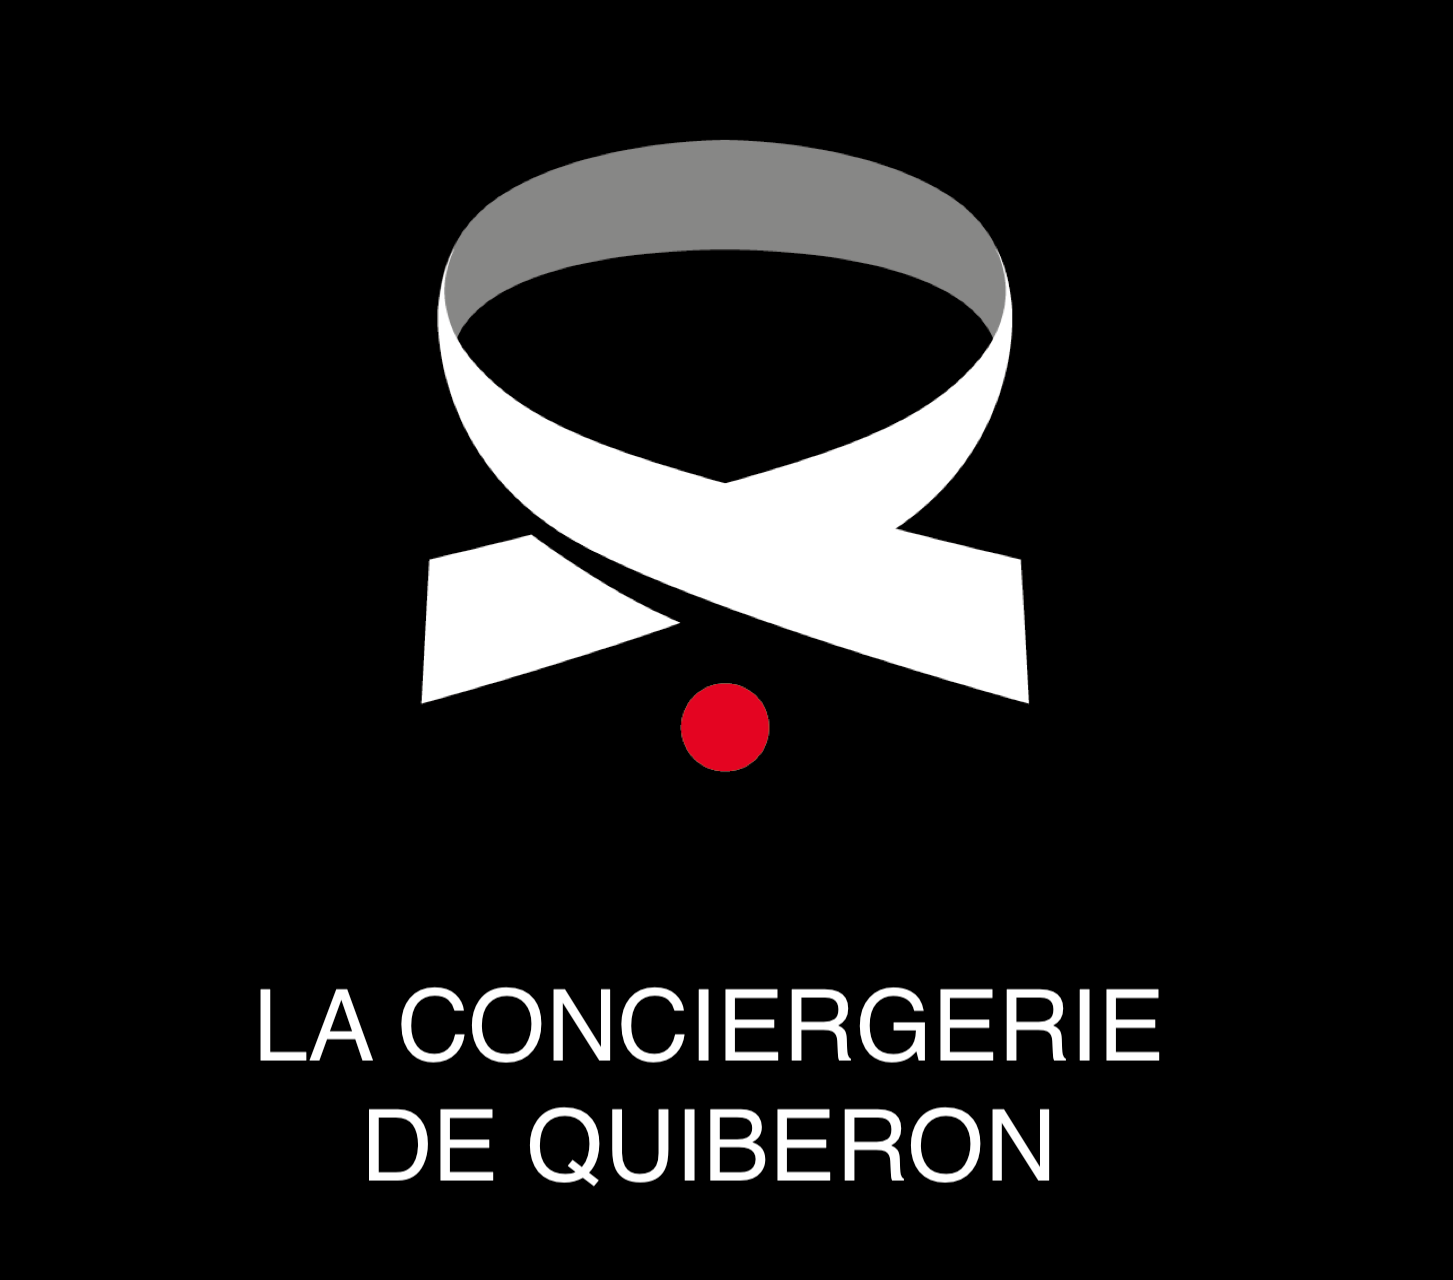 La Conciergerie de Quiberon